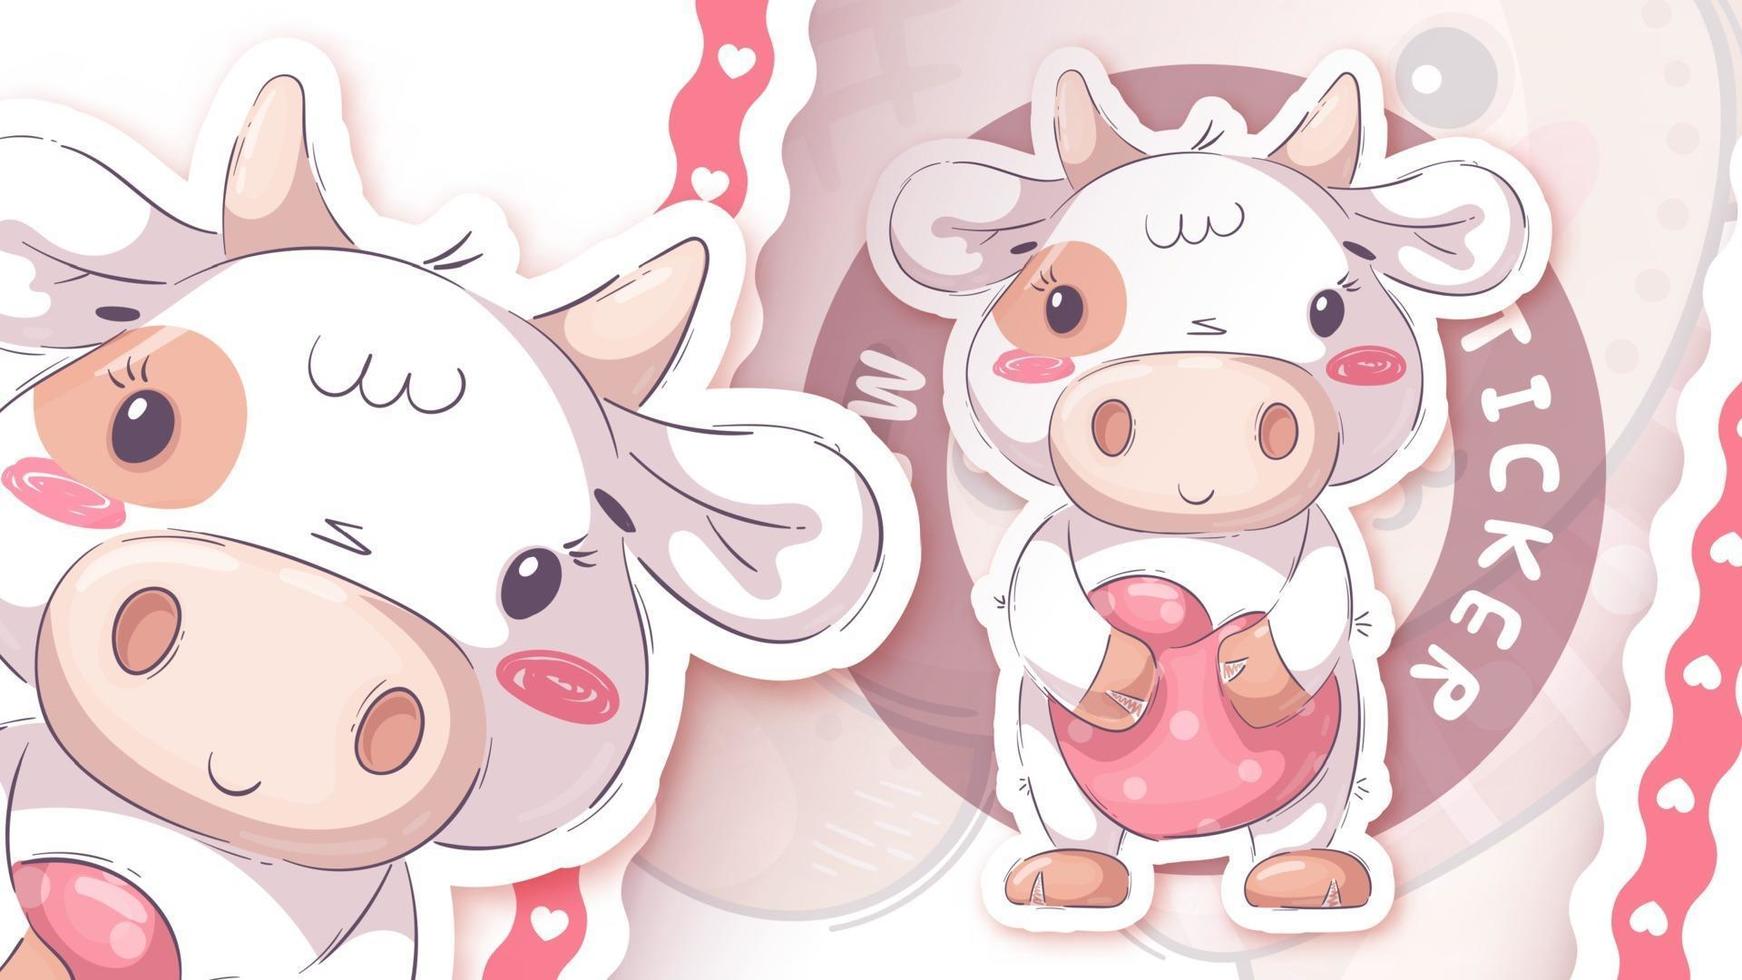 bonito personagem de desenho animado animal vaca com coração - adesivo vetor